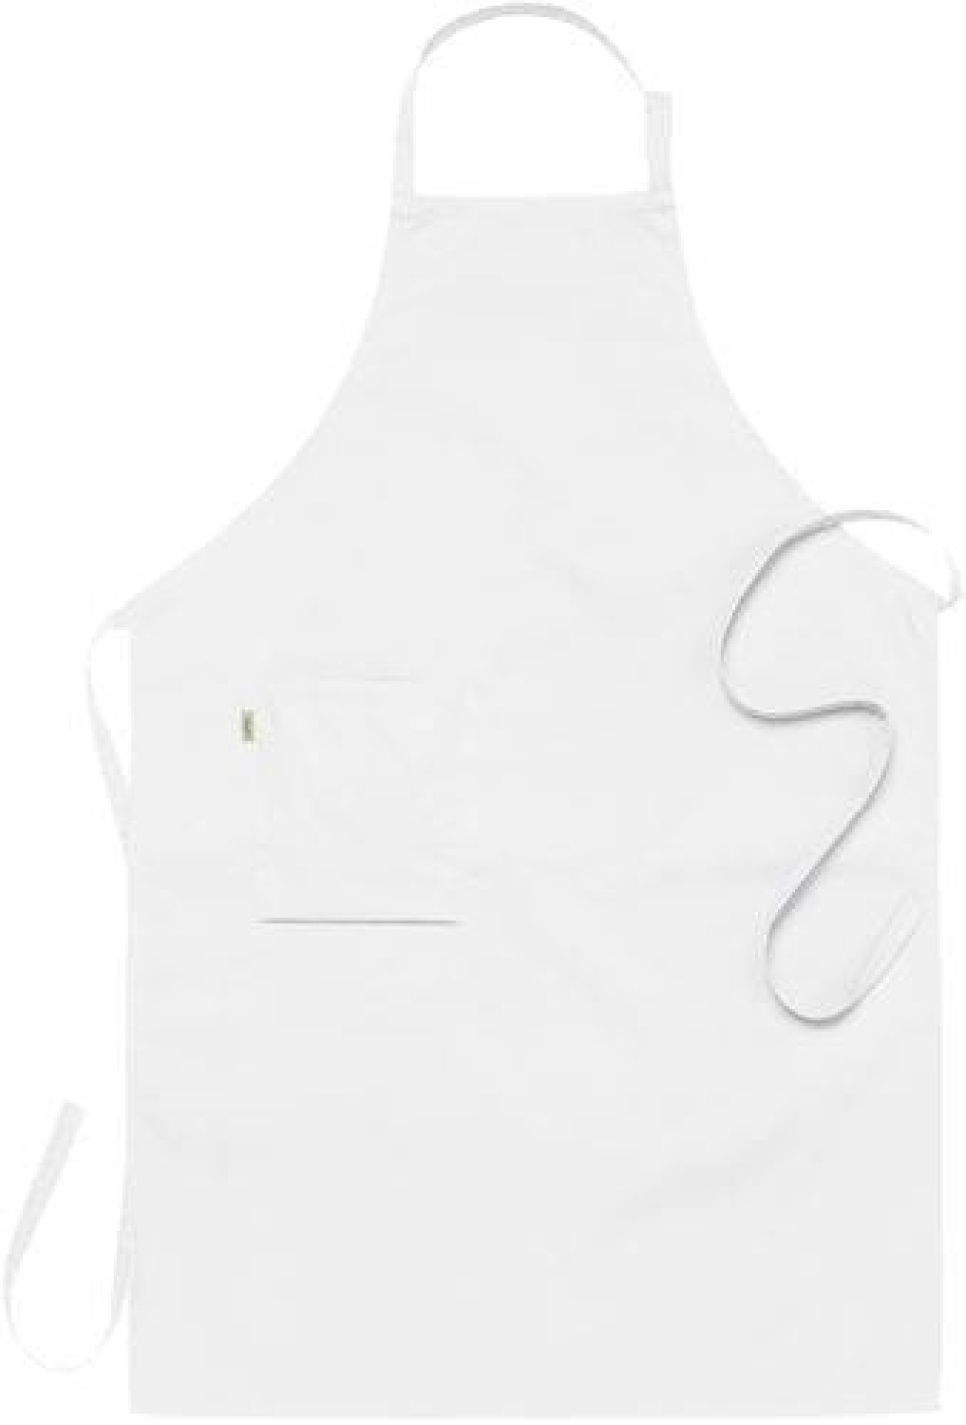 Latzschürze, weiß 75 x 110 cm - Segers in der Gruppe Kochen / Küchentextilien / Die Schürzen bei The Kitchen Lab (1092-10846)